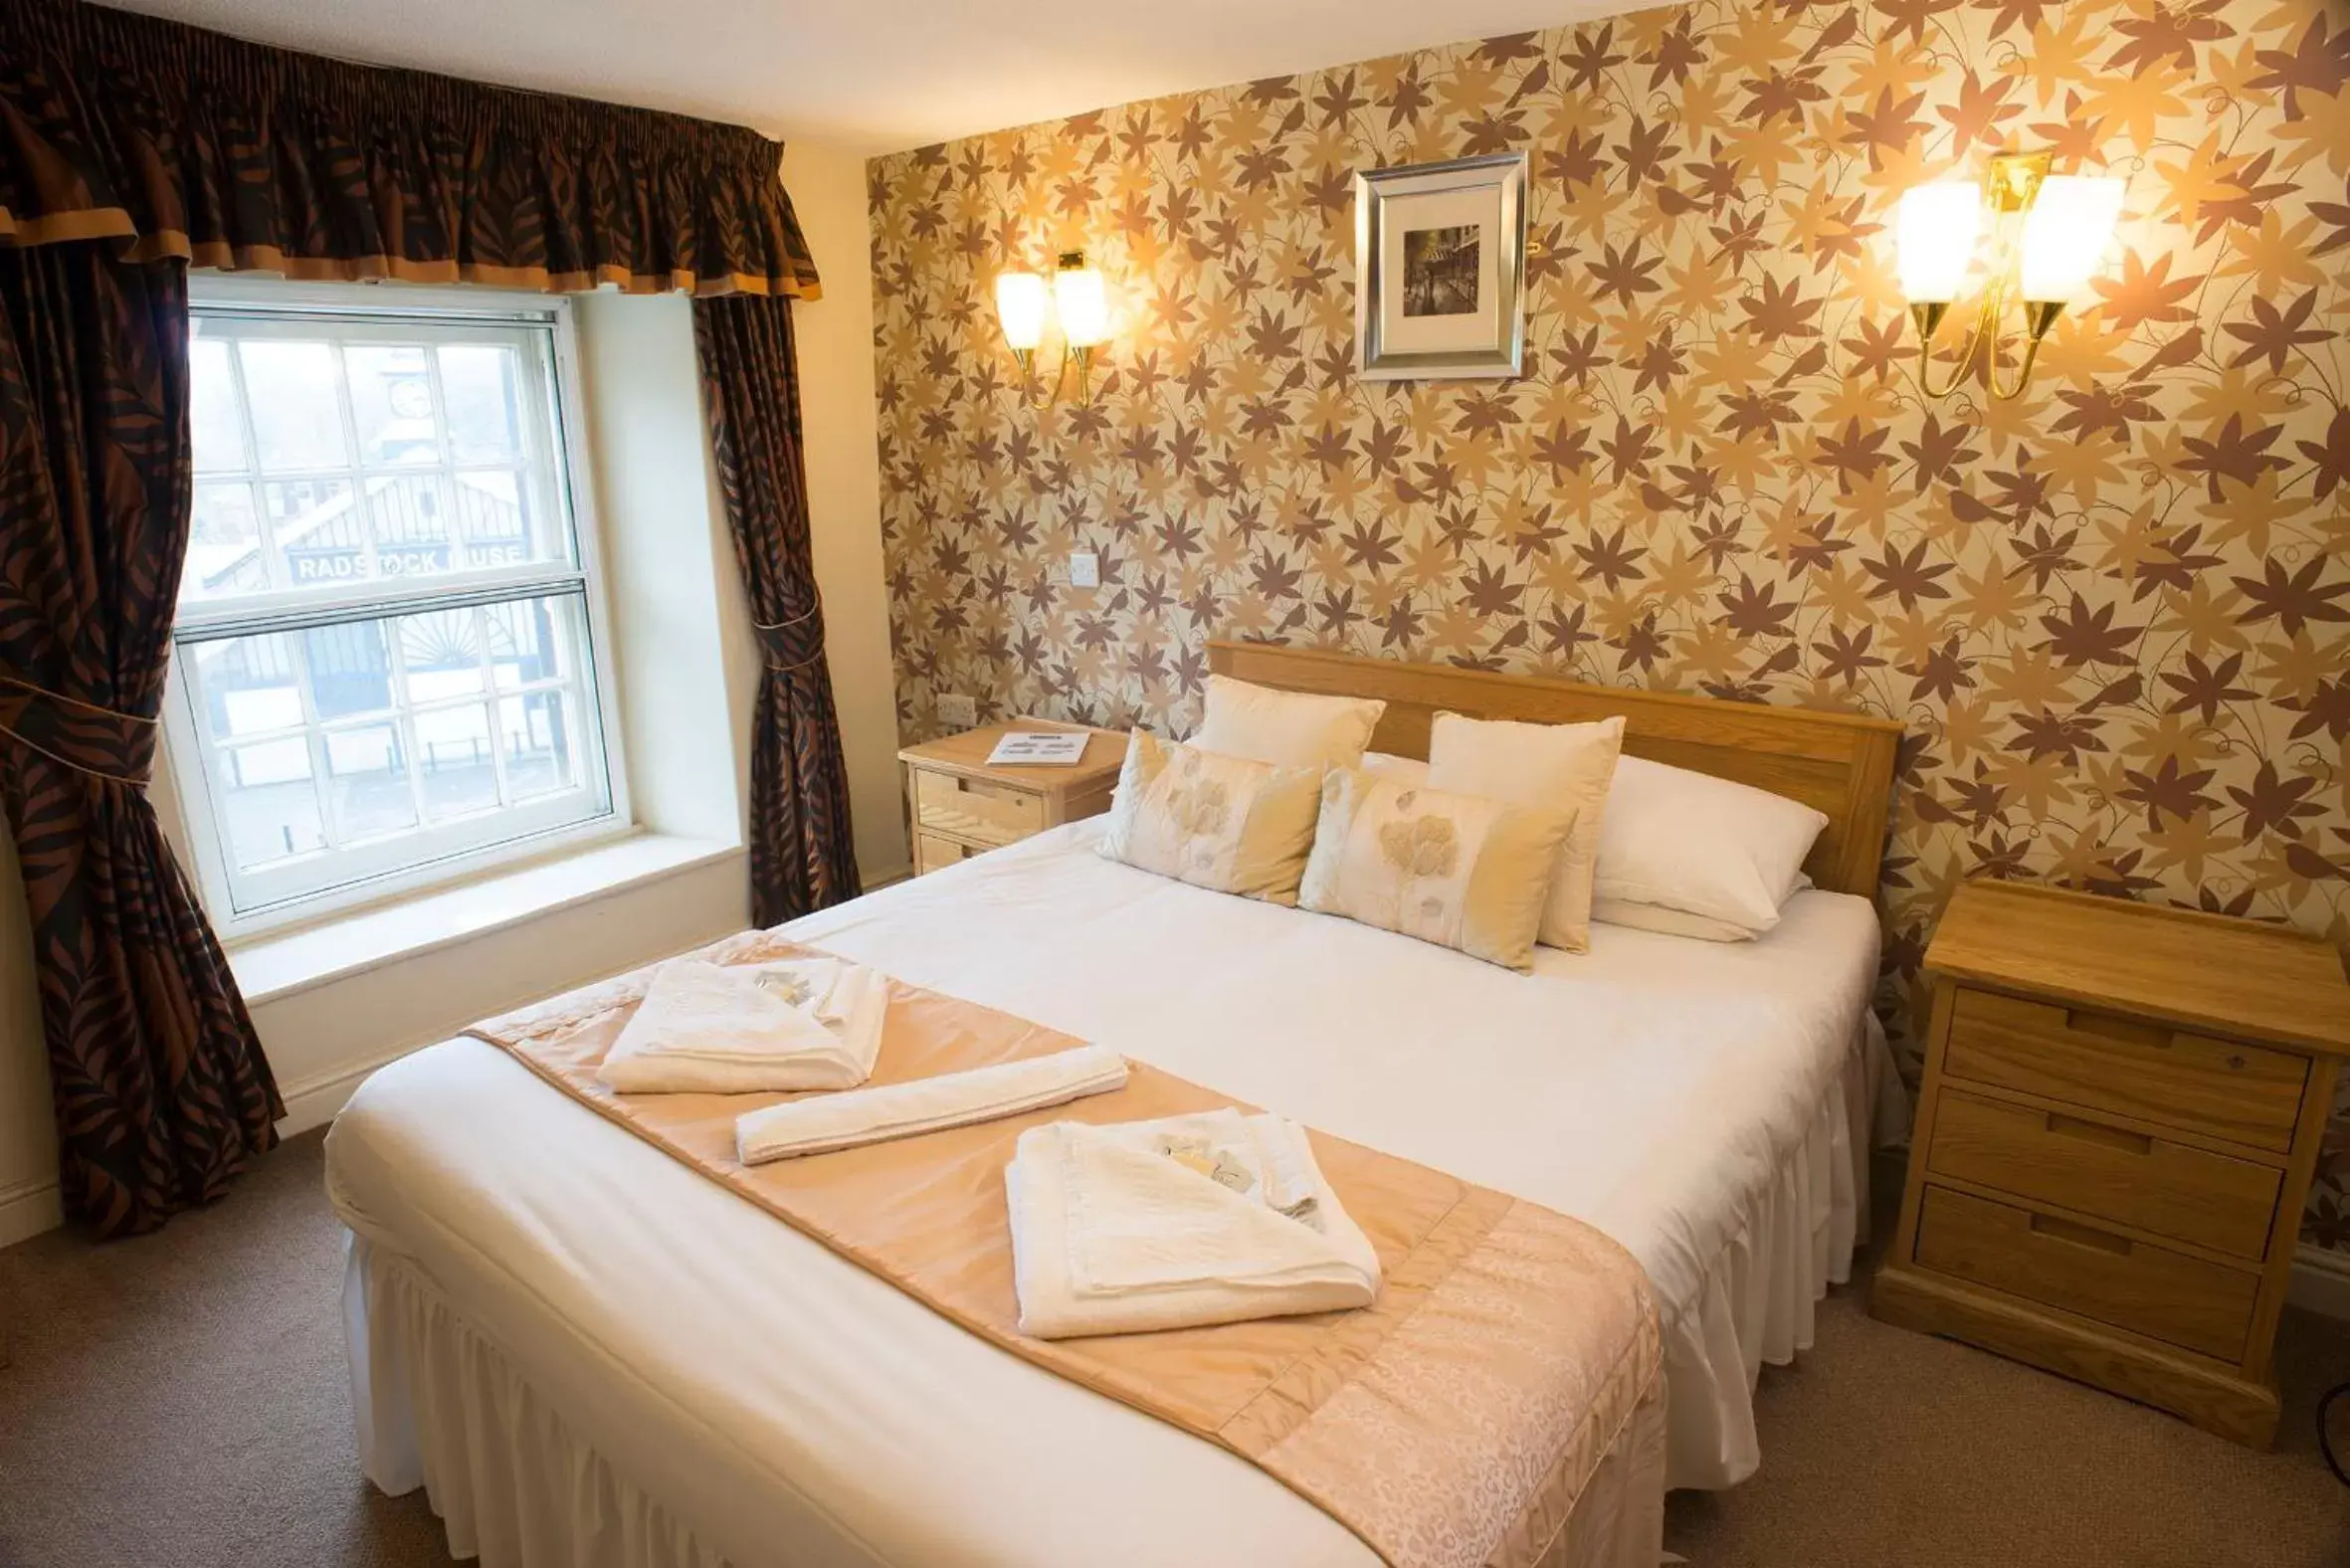 Double Room in Radstock Hotel near Bath